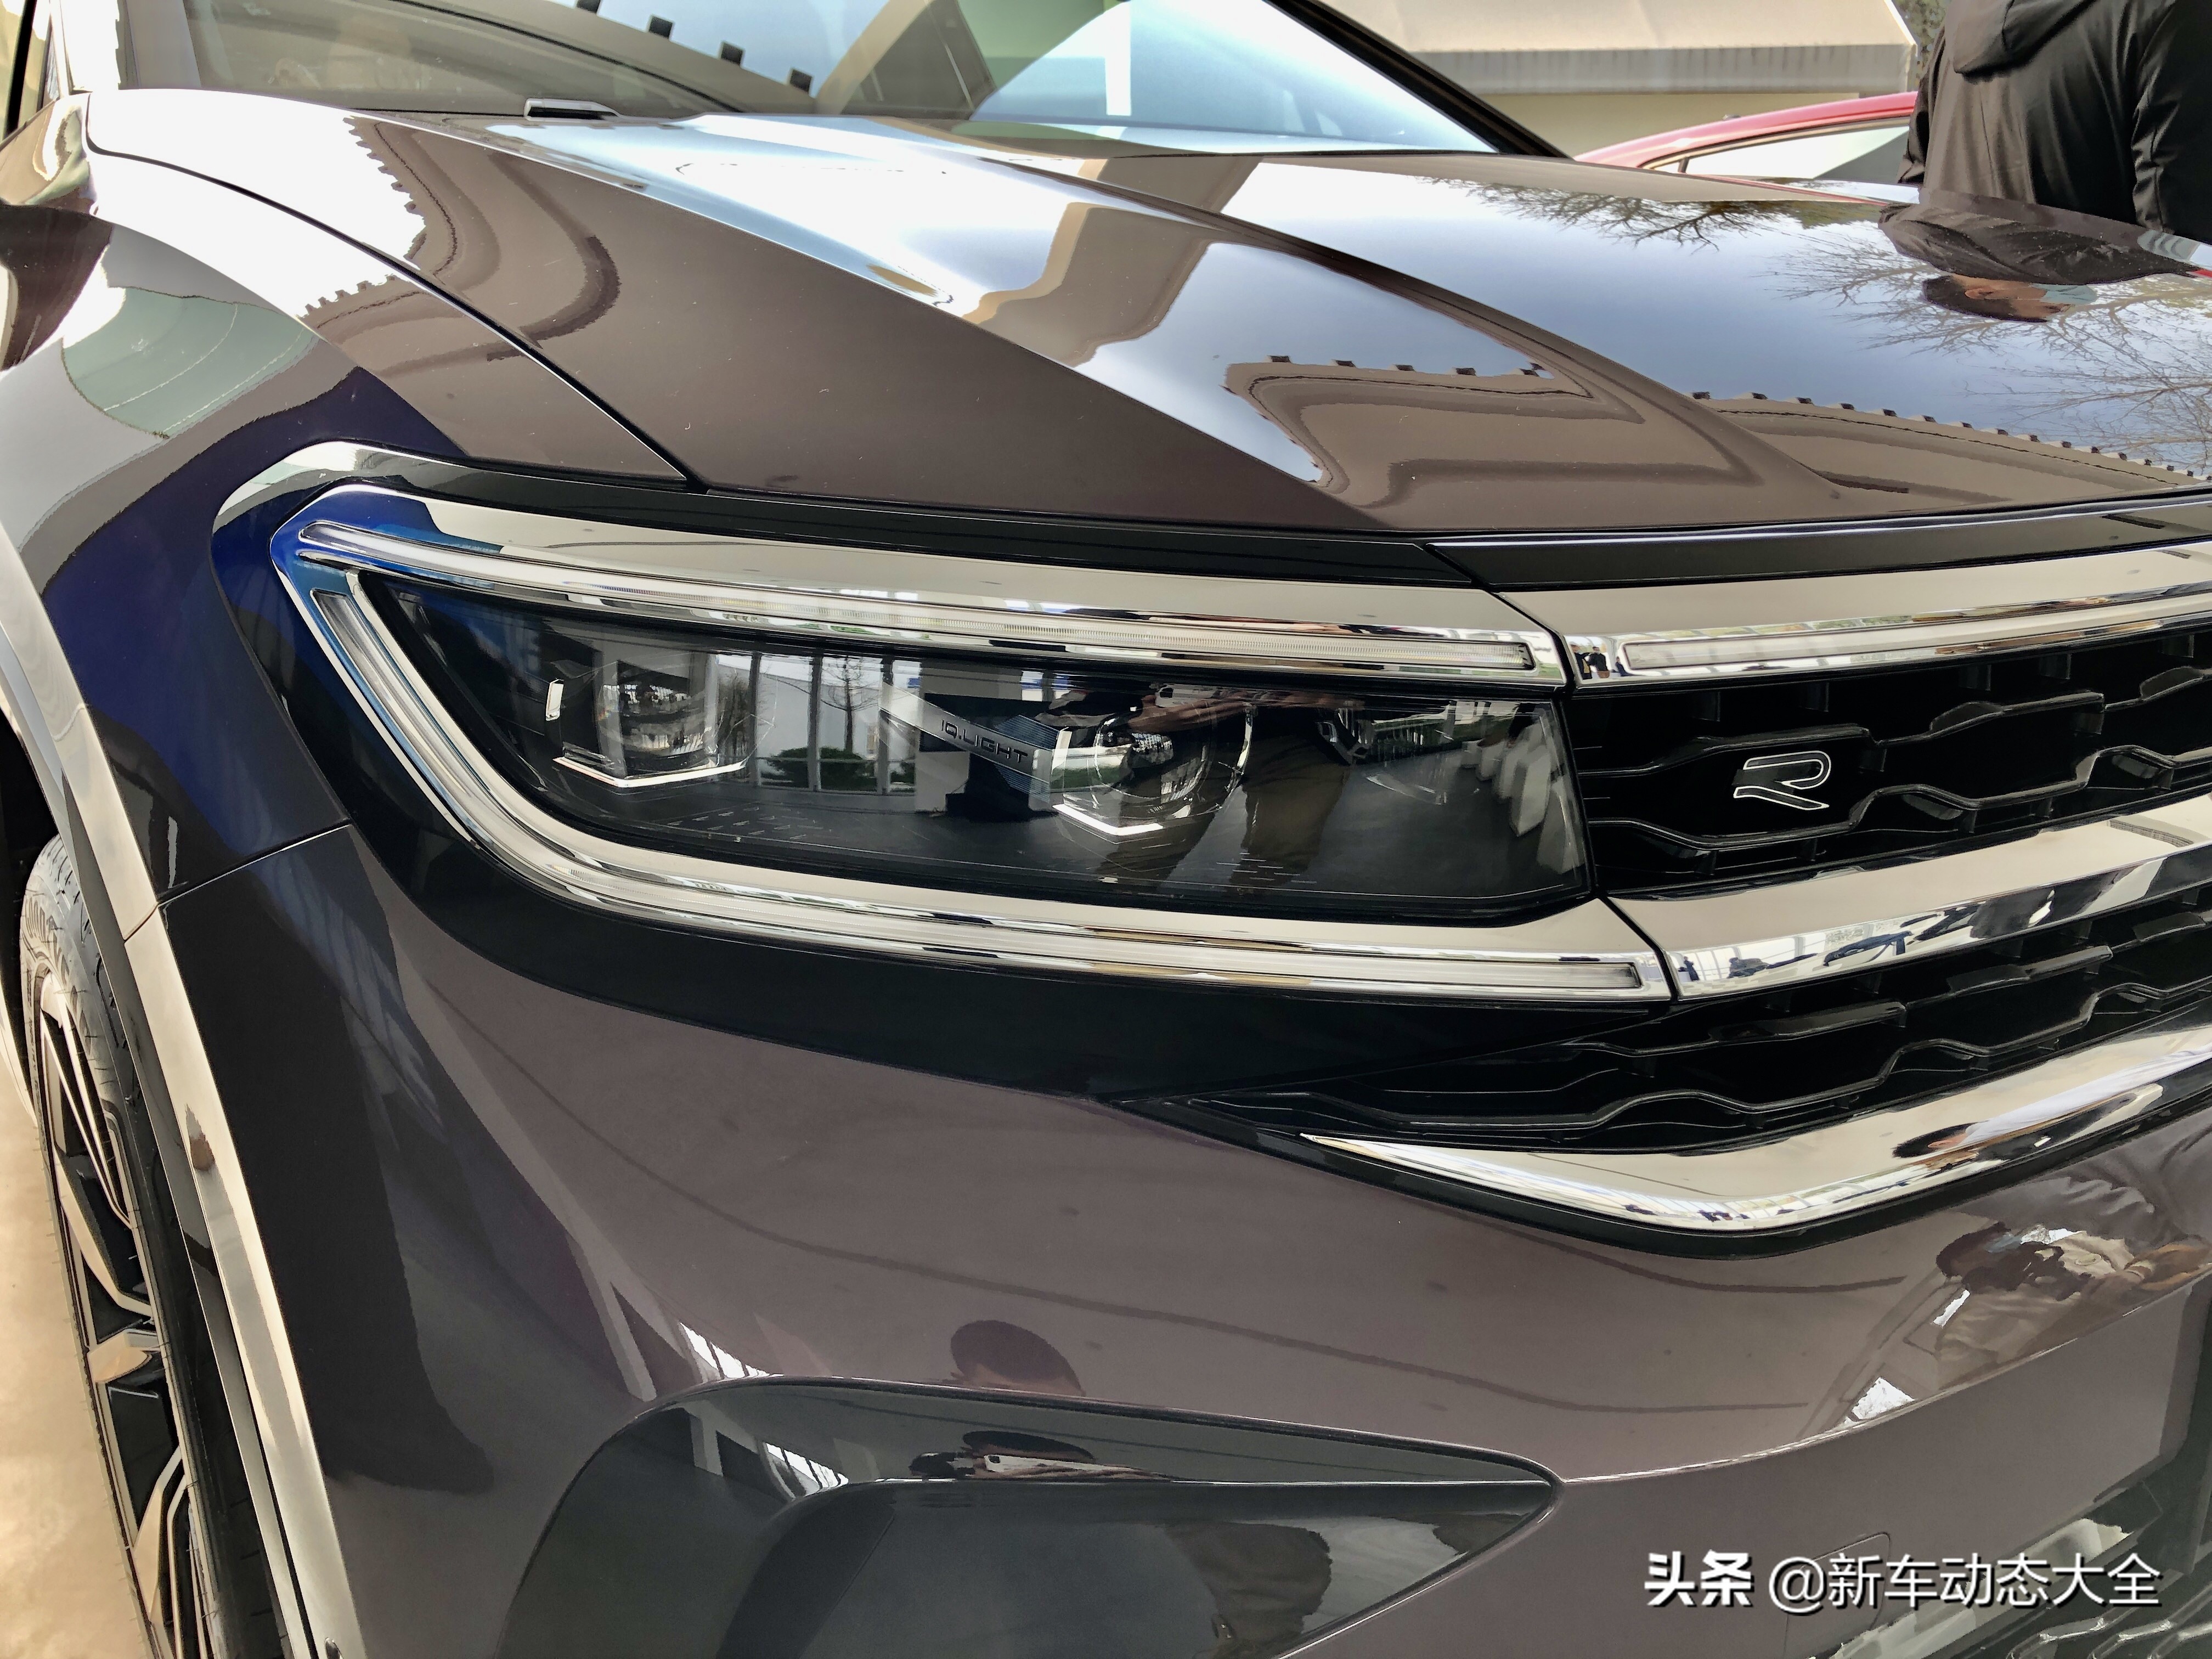 21上海車展 一汽 大眾talagon攬境正式發佈 新車動態大全 Mdeditor